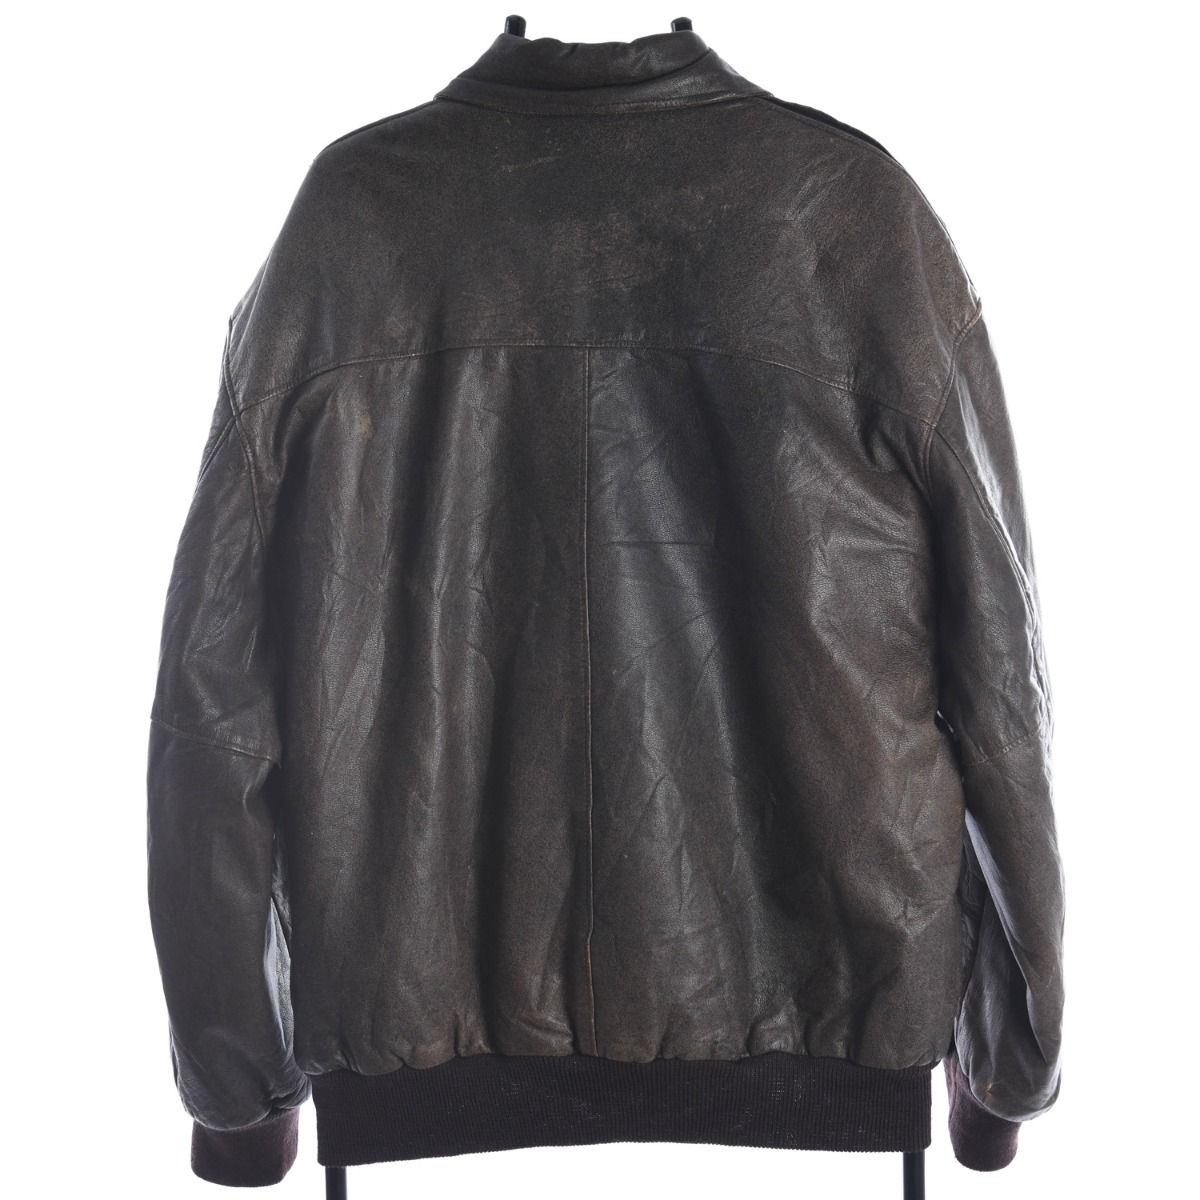 LL Bean 1970s A2 Leather Flight Jacket